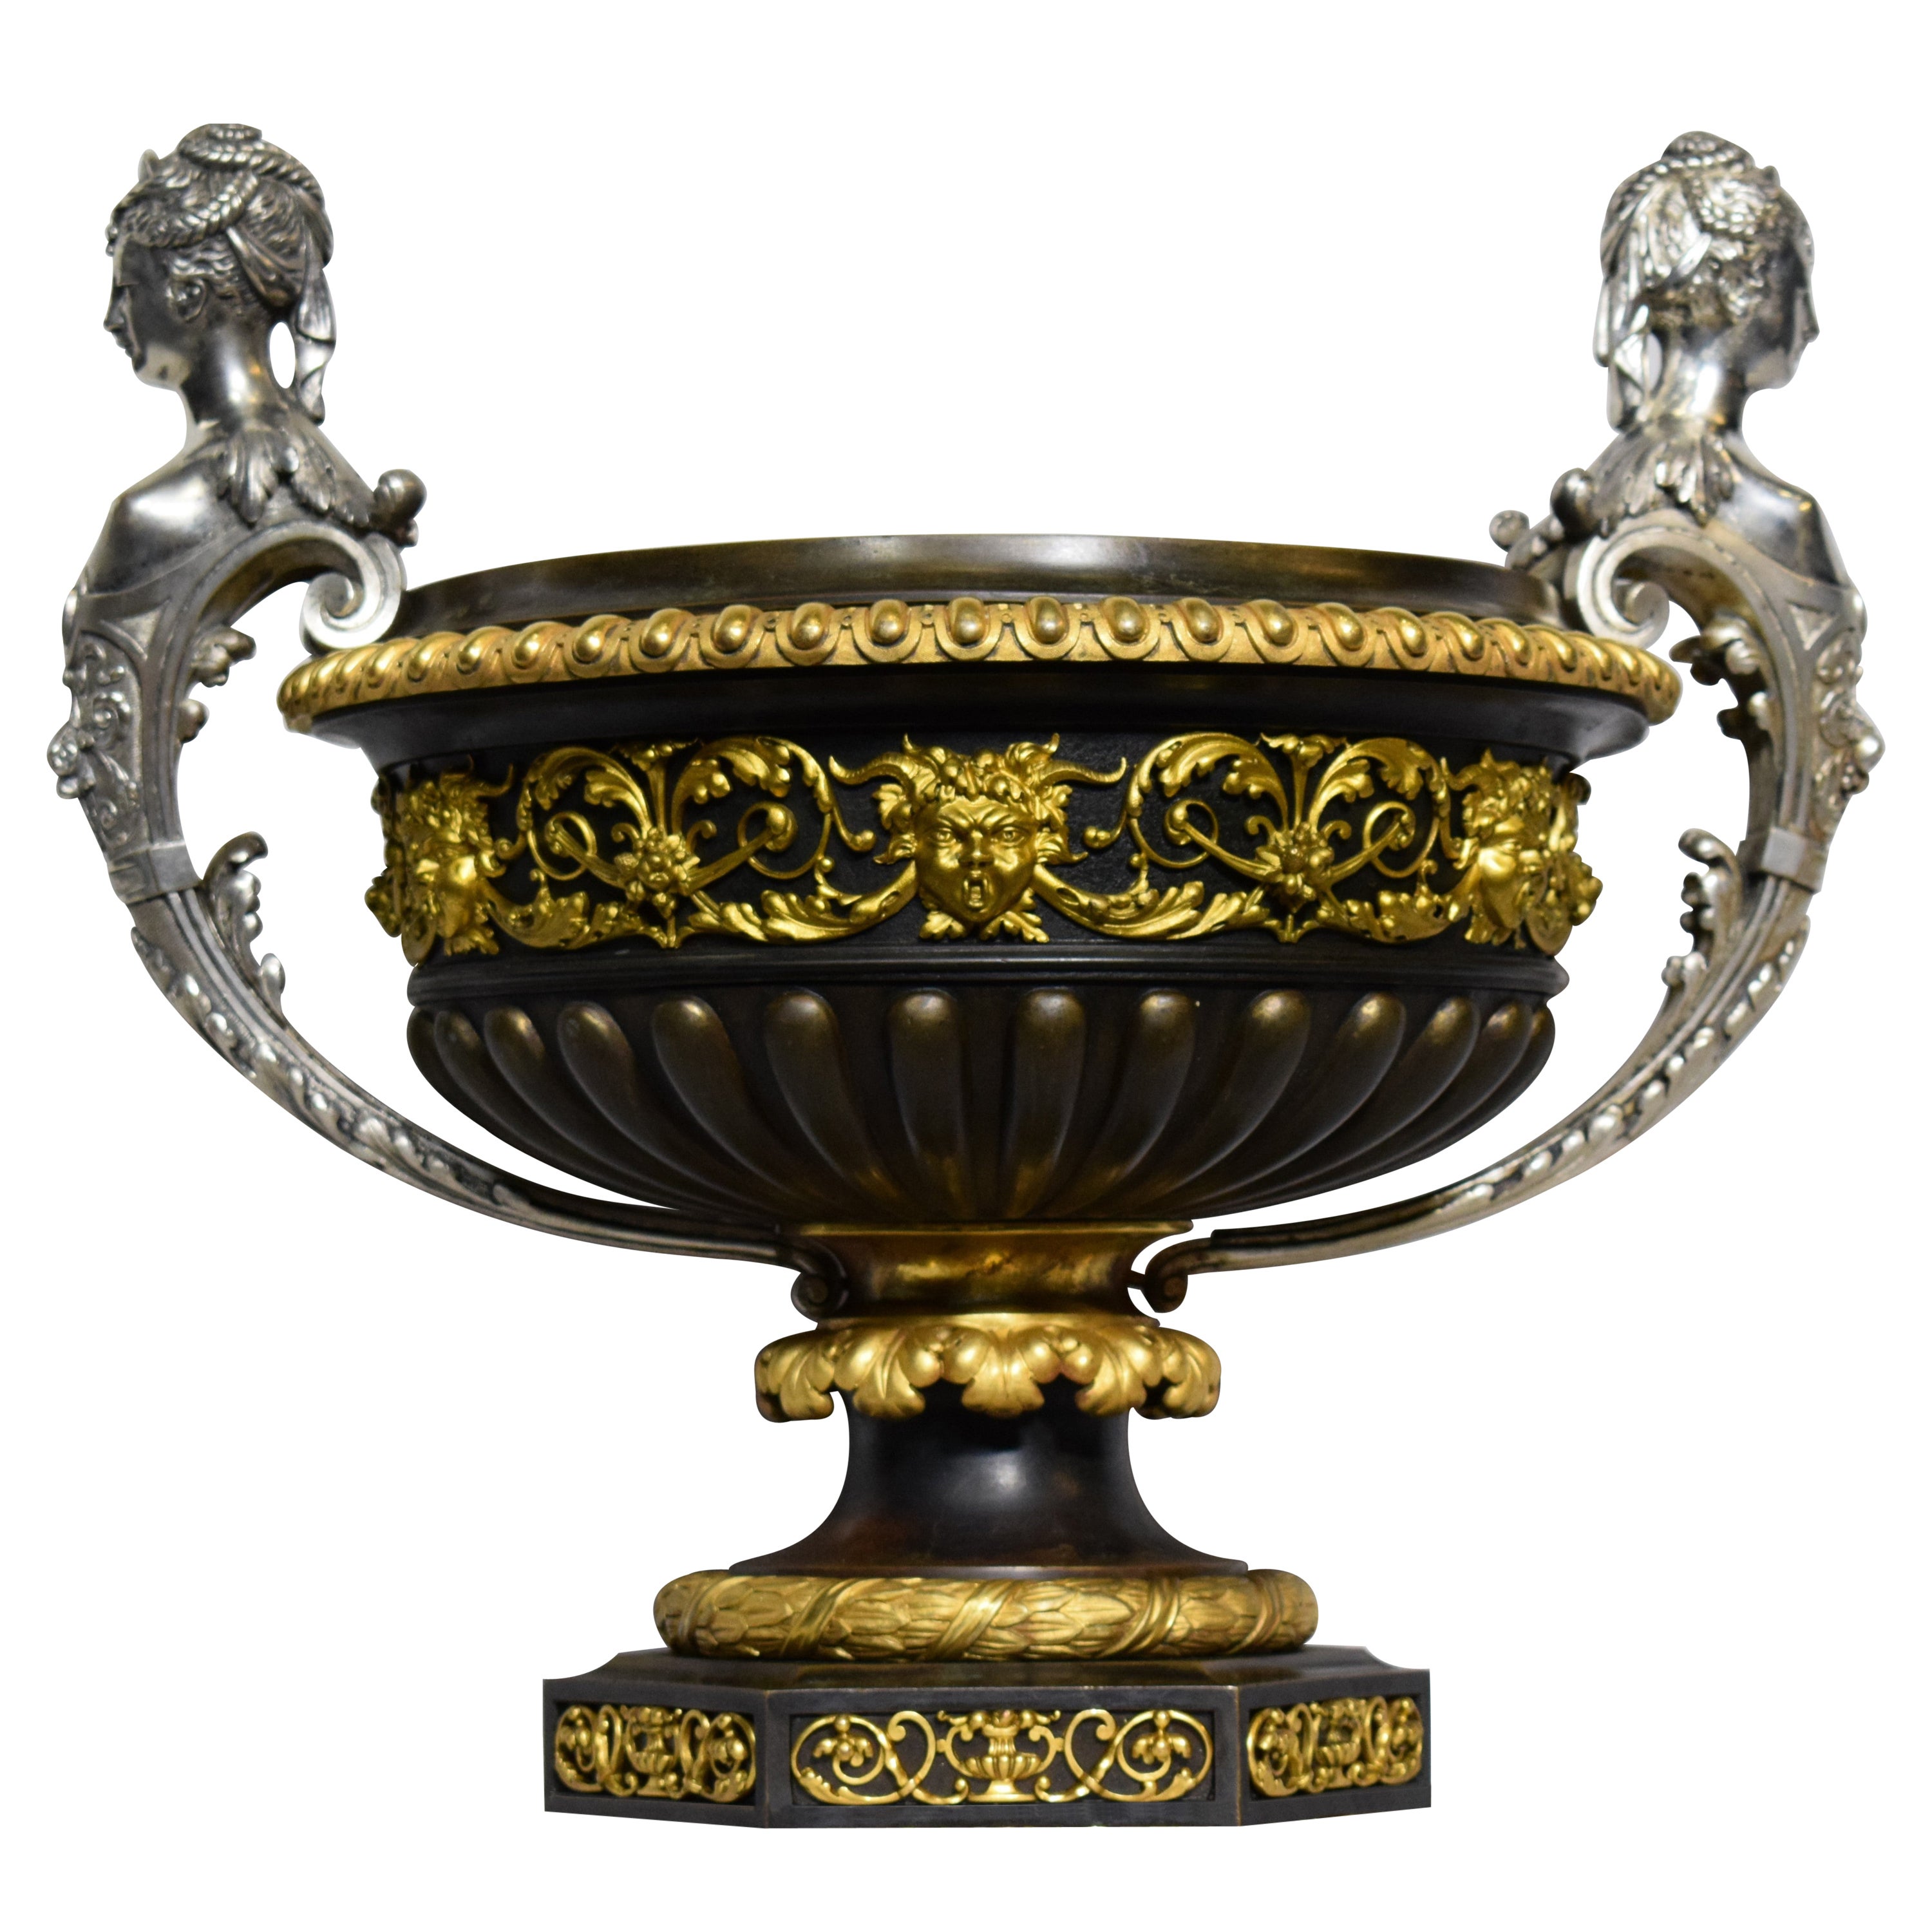 Vergoldete Bronze-Urne von Napoleon III. aus dem 19. Jahrhundert